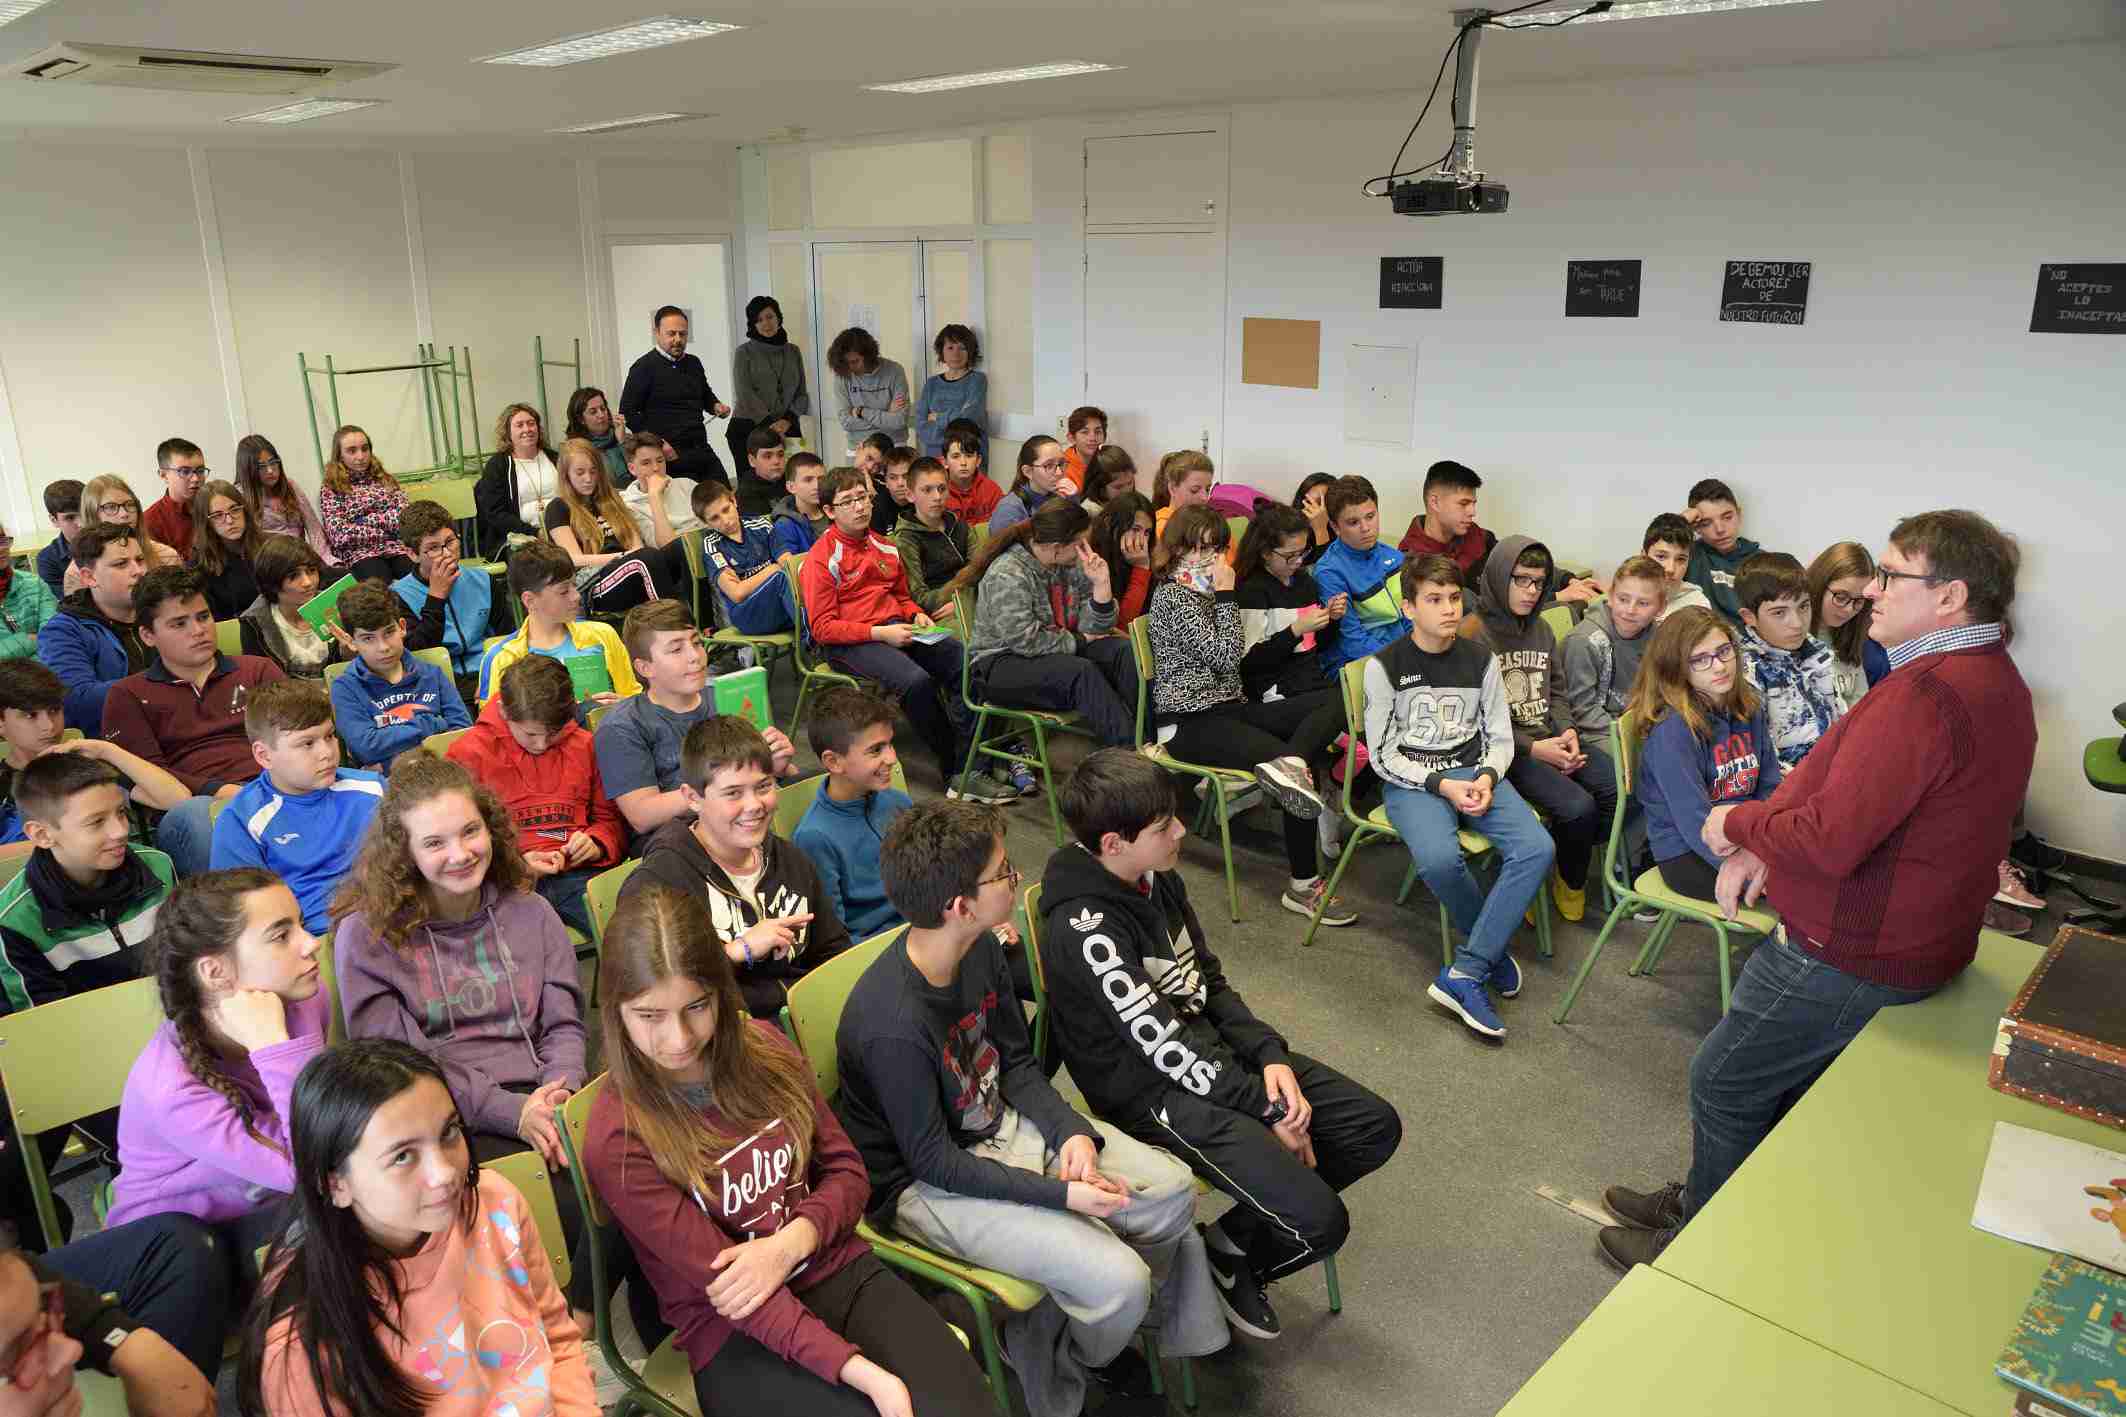 La Biblioteca Municipal “Cervantes” organizó el encuentro de escolares y estudiantes con el escritor Carles Cano 2